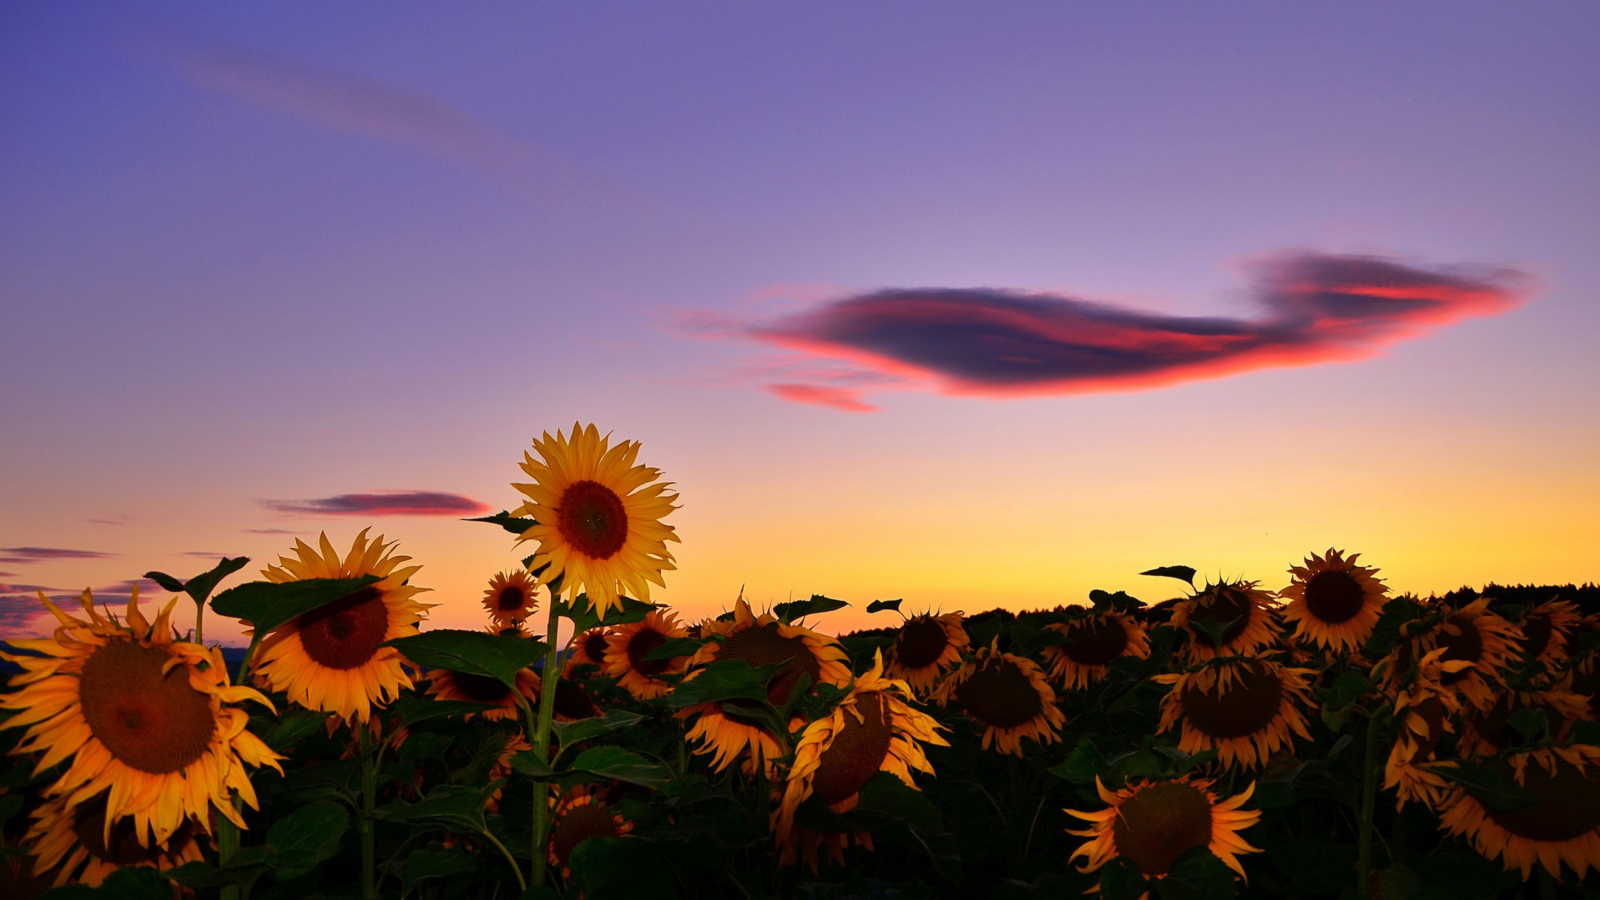 Sfondi Sunflowers Waiting For Sun 1600x900